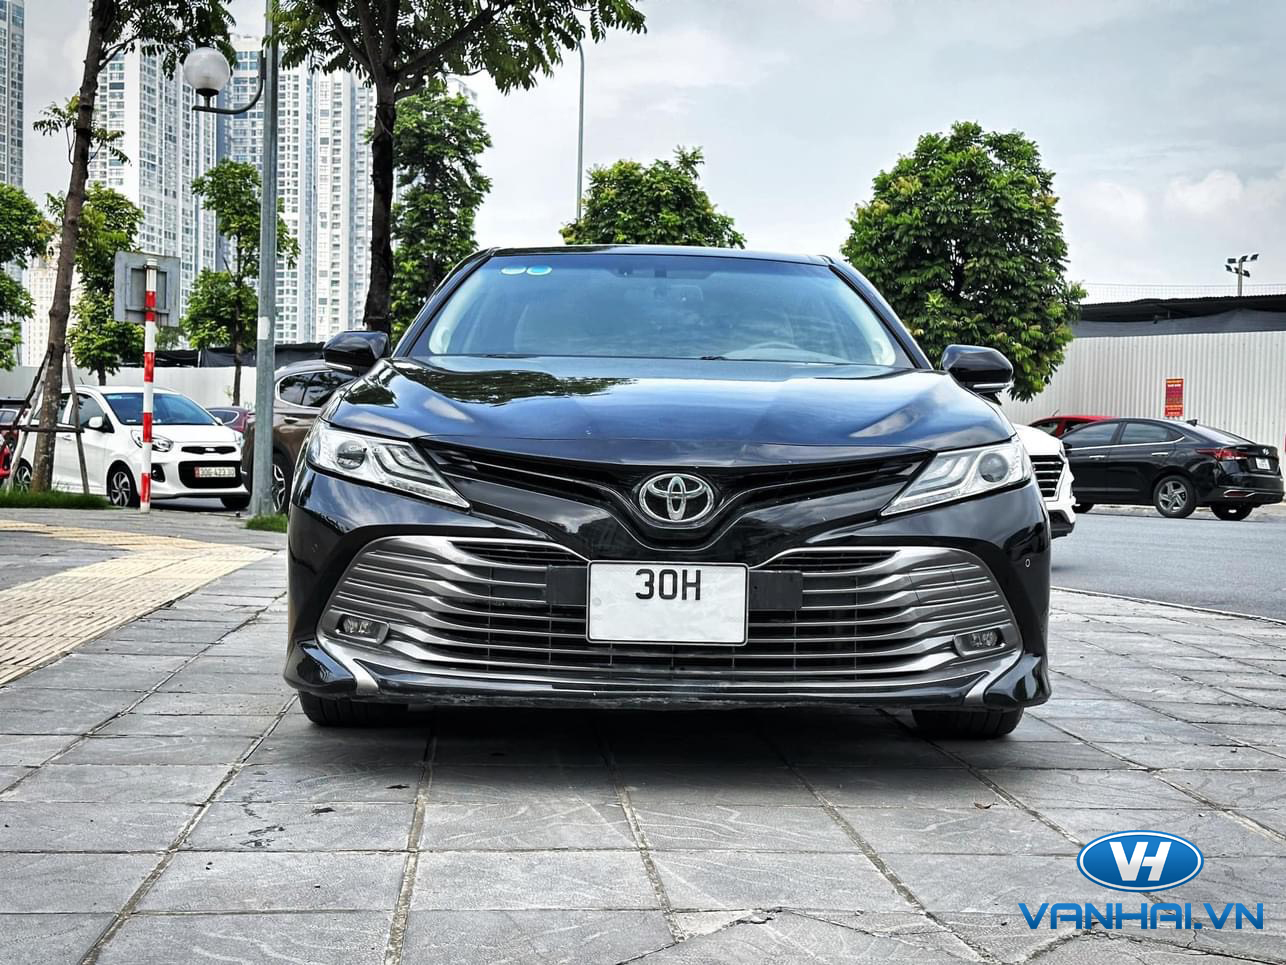 Cho thuê xe 4 chỗ Toyota Camry 2.5 Q tại Hà Nội 